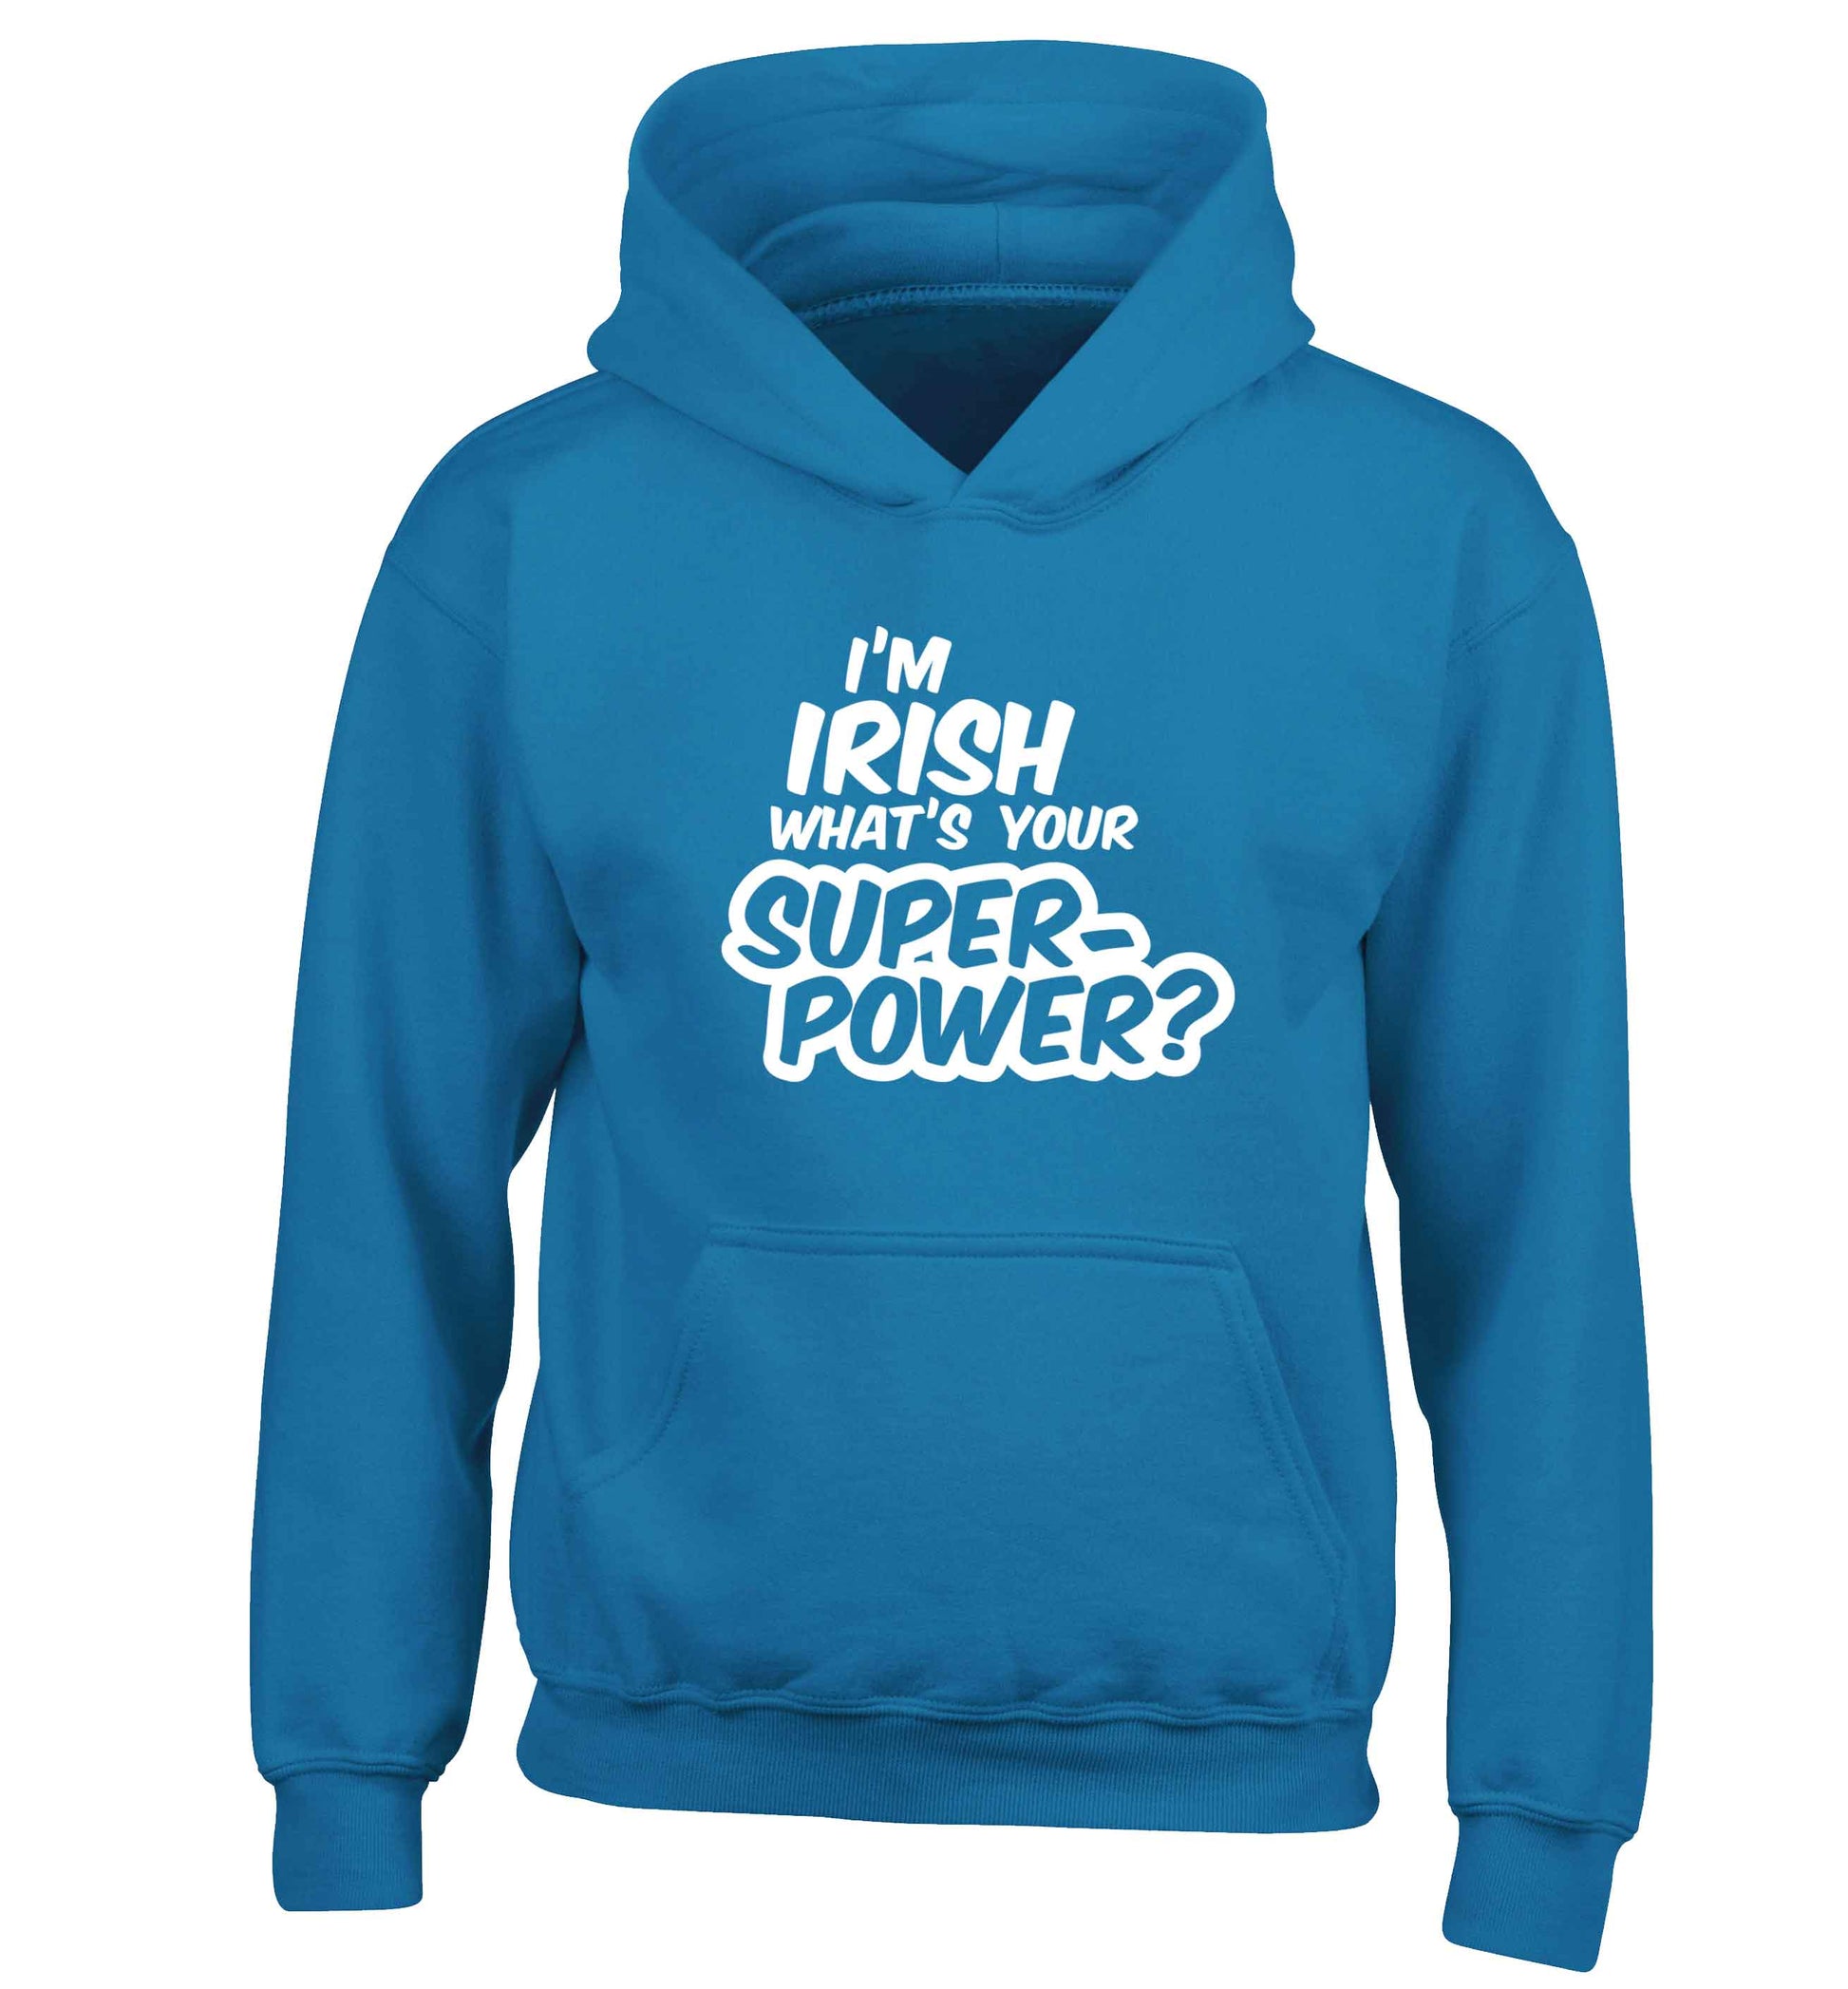 I'm Irish what's your superpower? children's blue hoodie 12-13 Years